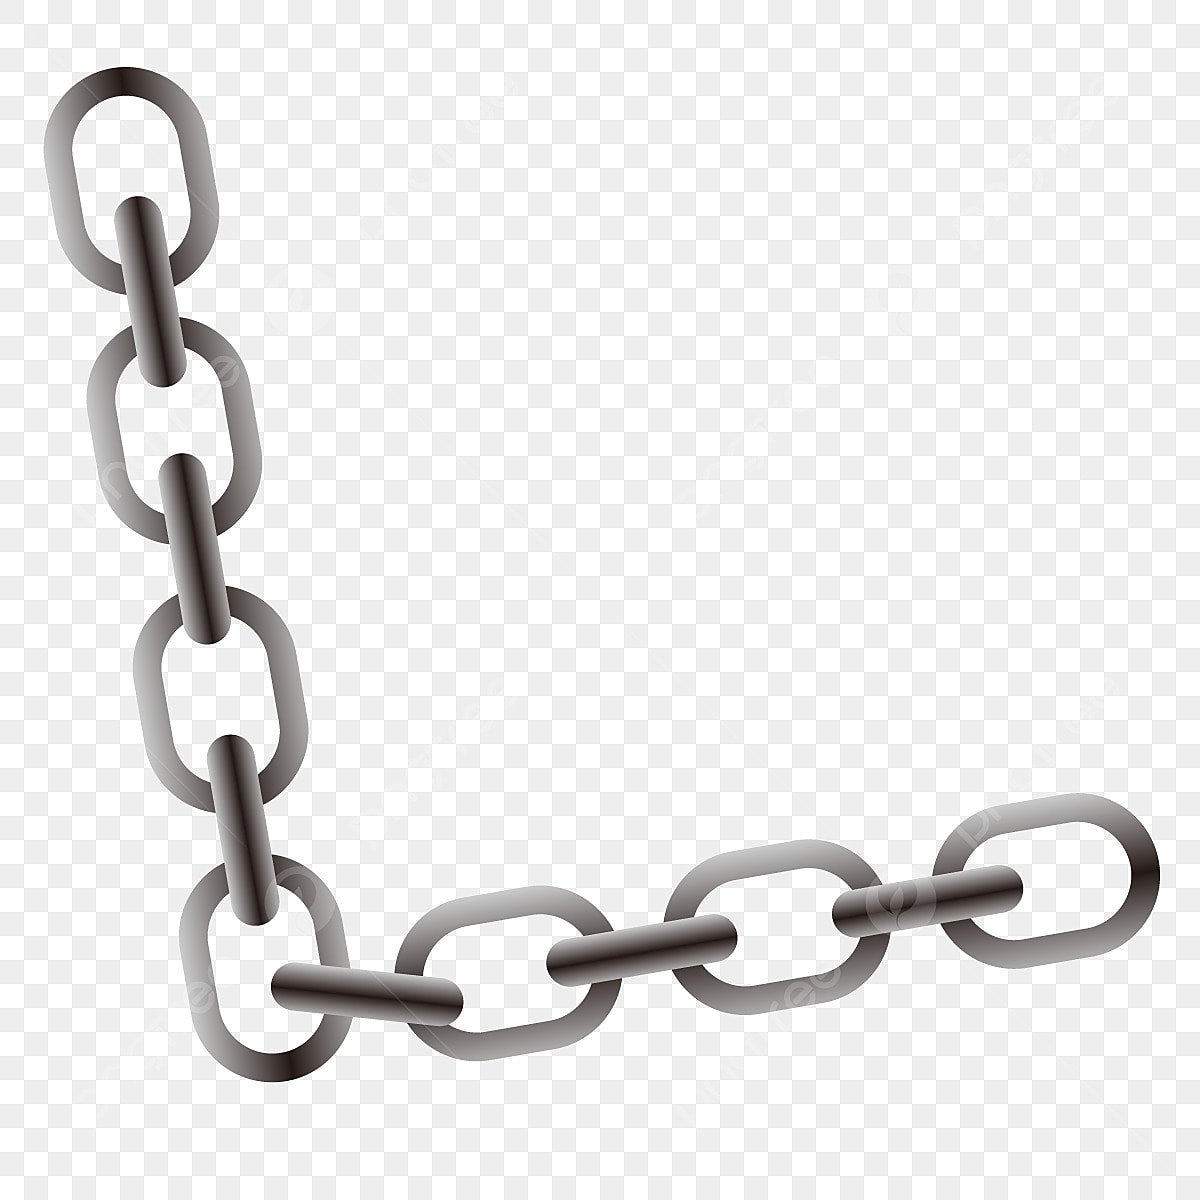 chain clipart